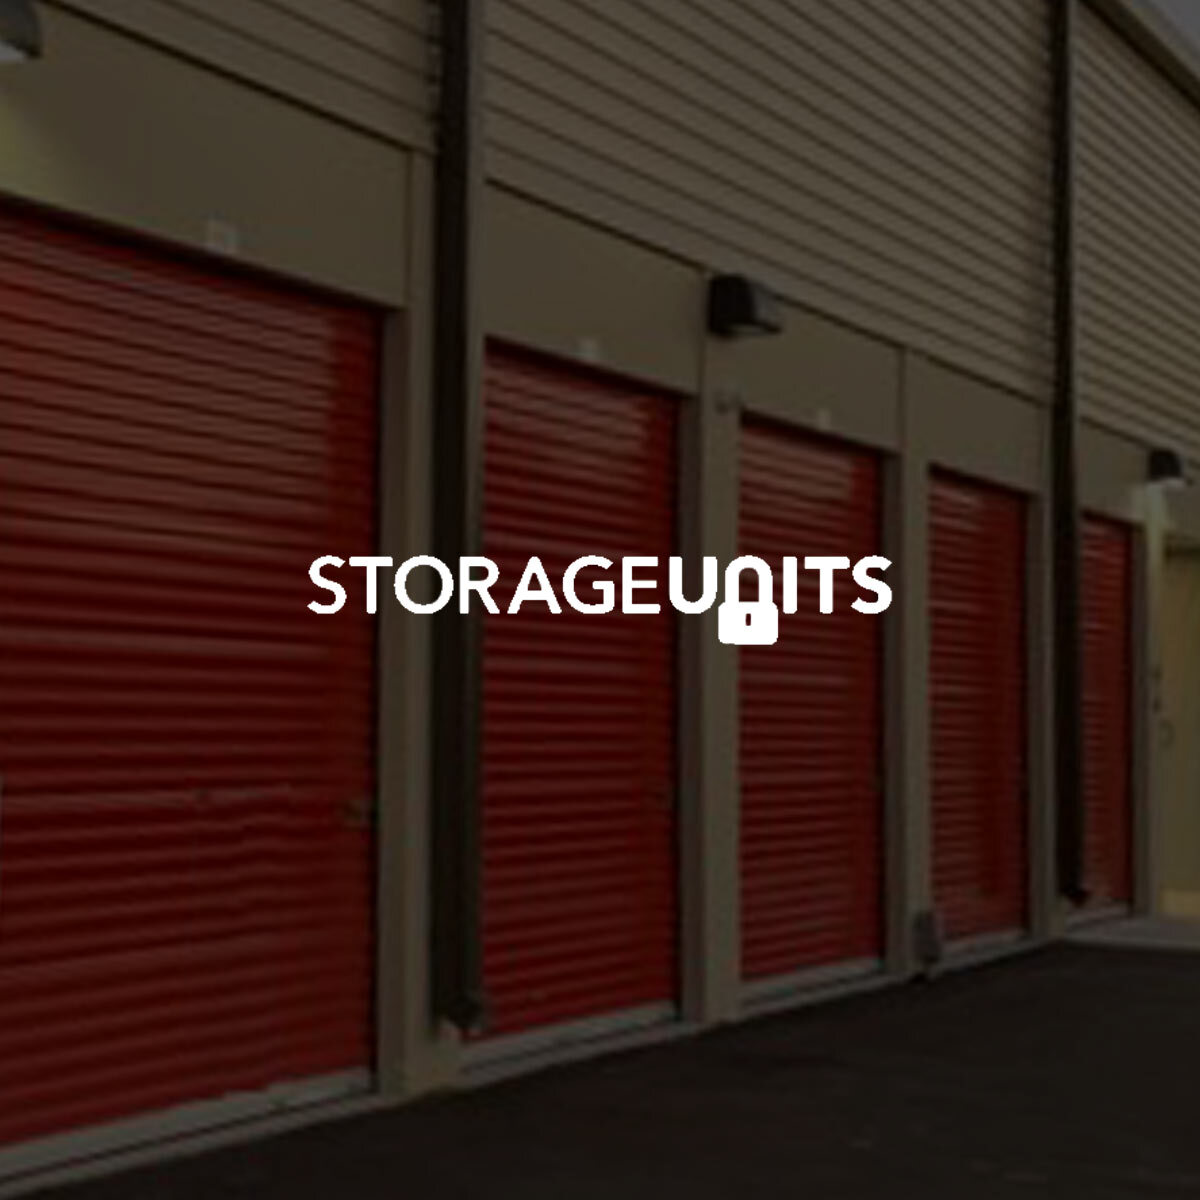 Storage Facility Website Design | Pixelchefs